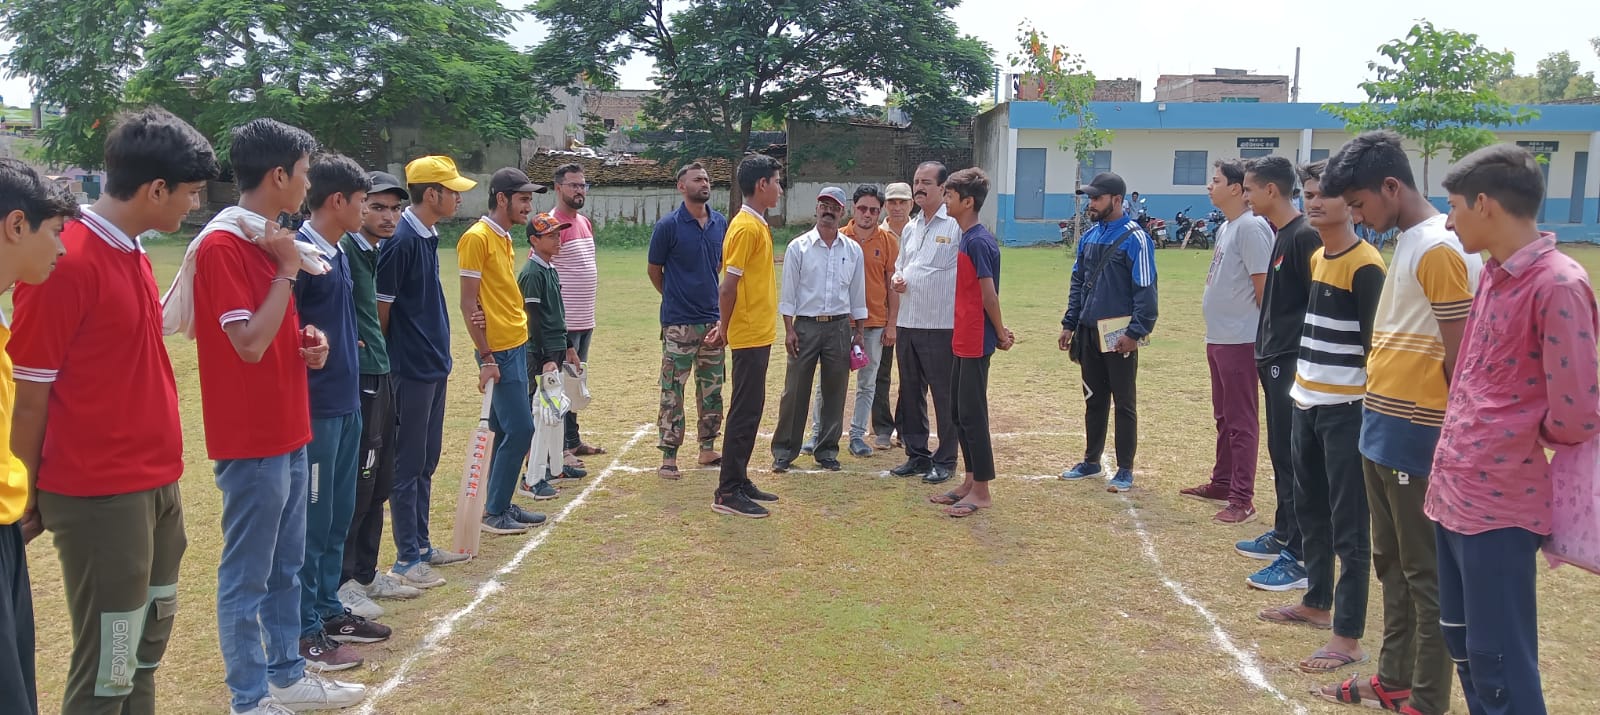 ब्लॉक स्तरीय क्रिकेट टूर्नामेंट में सेंट एस. आर .एस . स्कूल बना विजेता